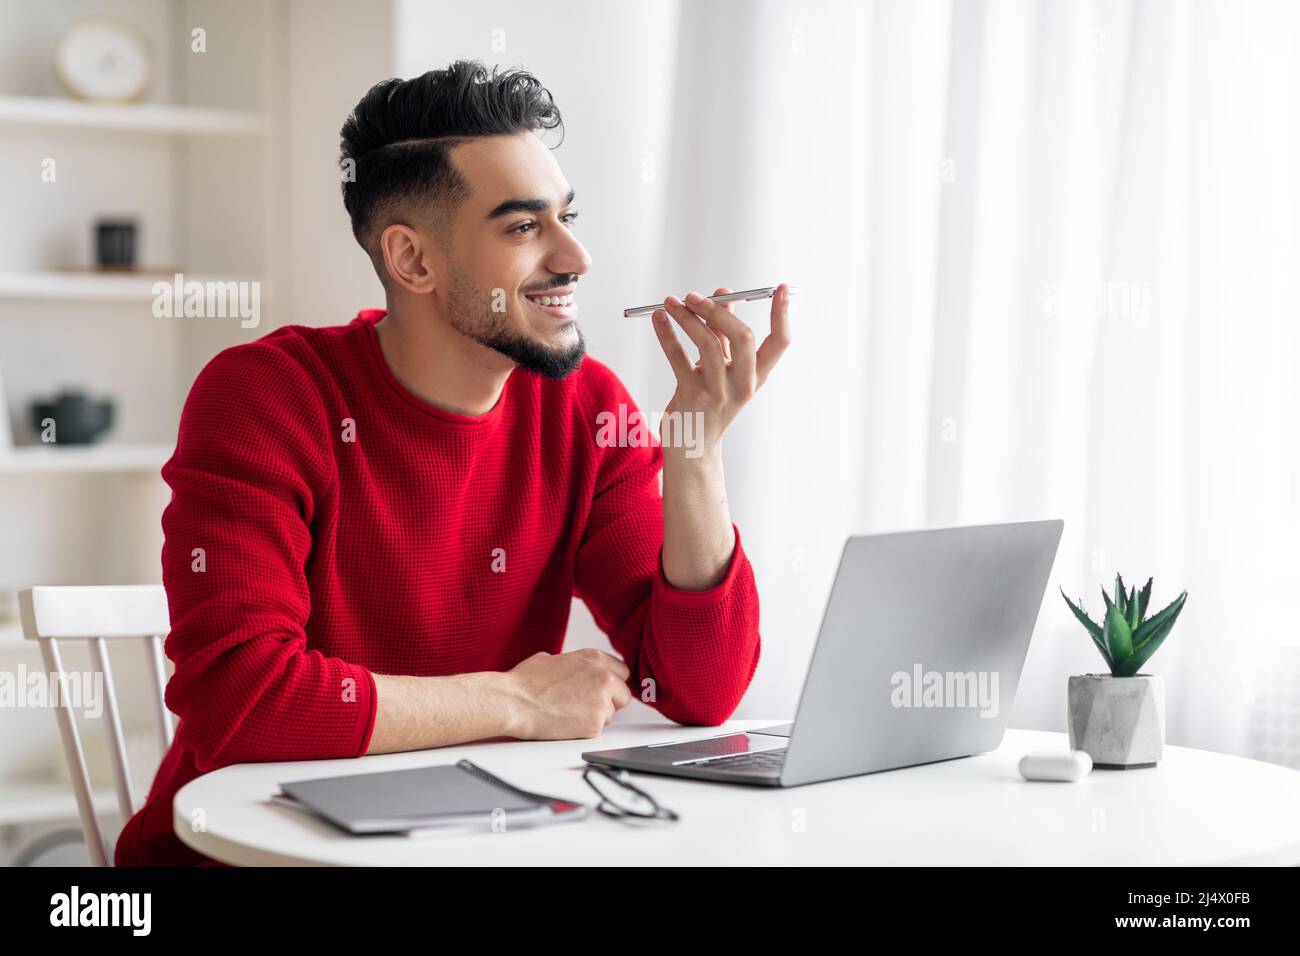 Sorridente ragazzo arabo millenario con barba in abiti rossi parla telefonicamente sul posto di lavoro con un computer portatile Foto Stock